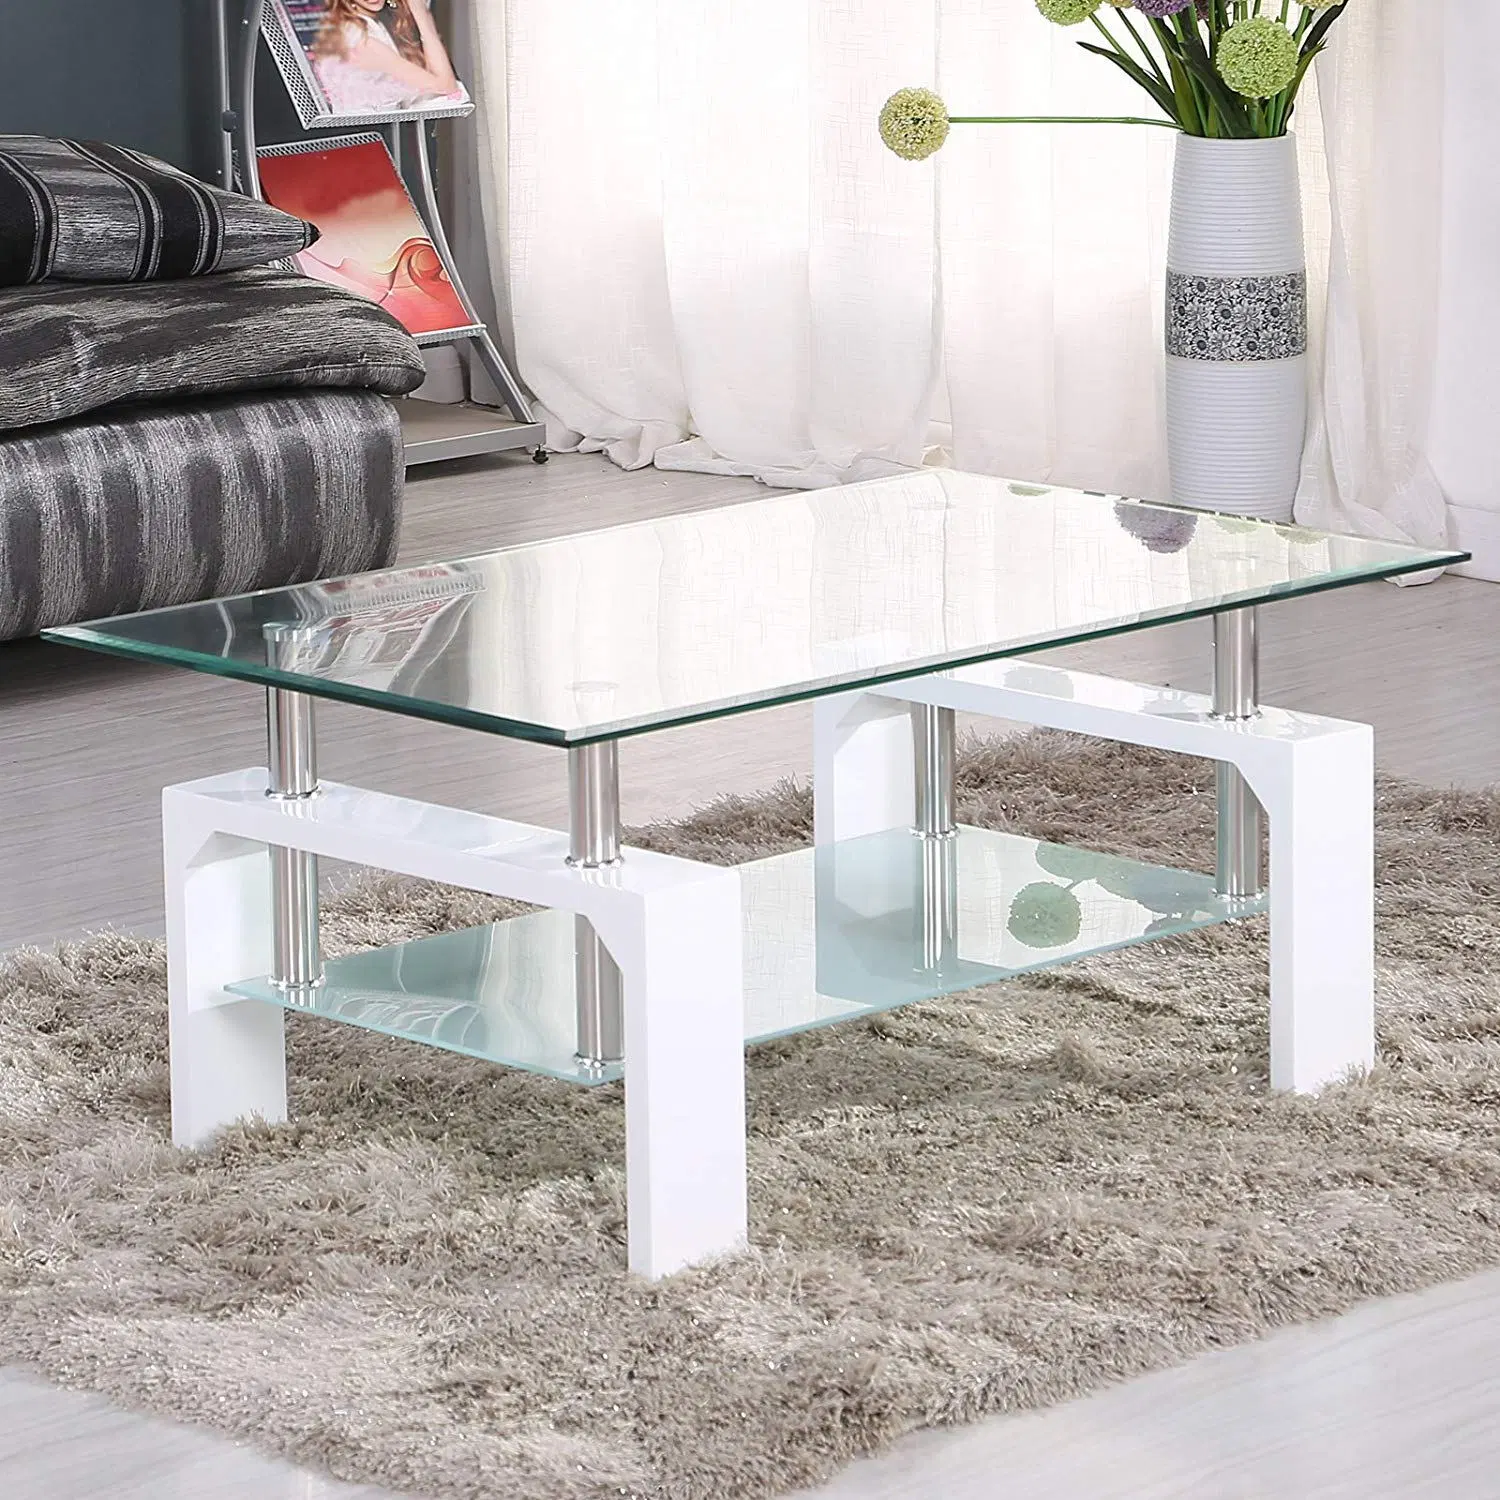 Neues Design Moderne Schwarze Quadratische Glas Couchtisch Wohnmöbel Sofa-Beistelltisch